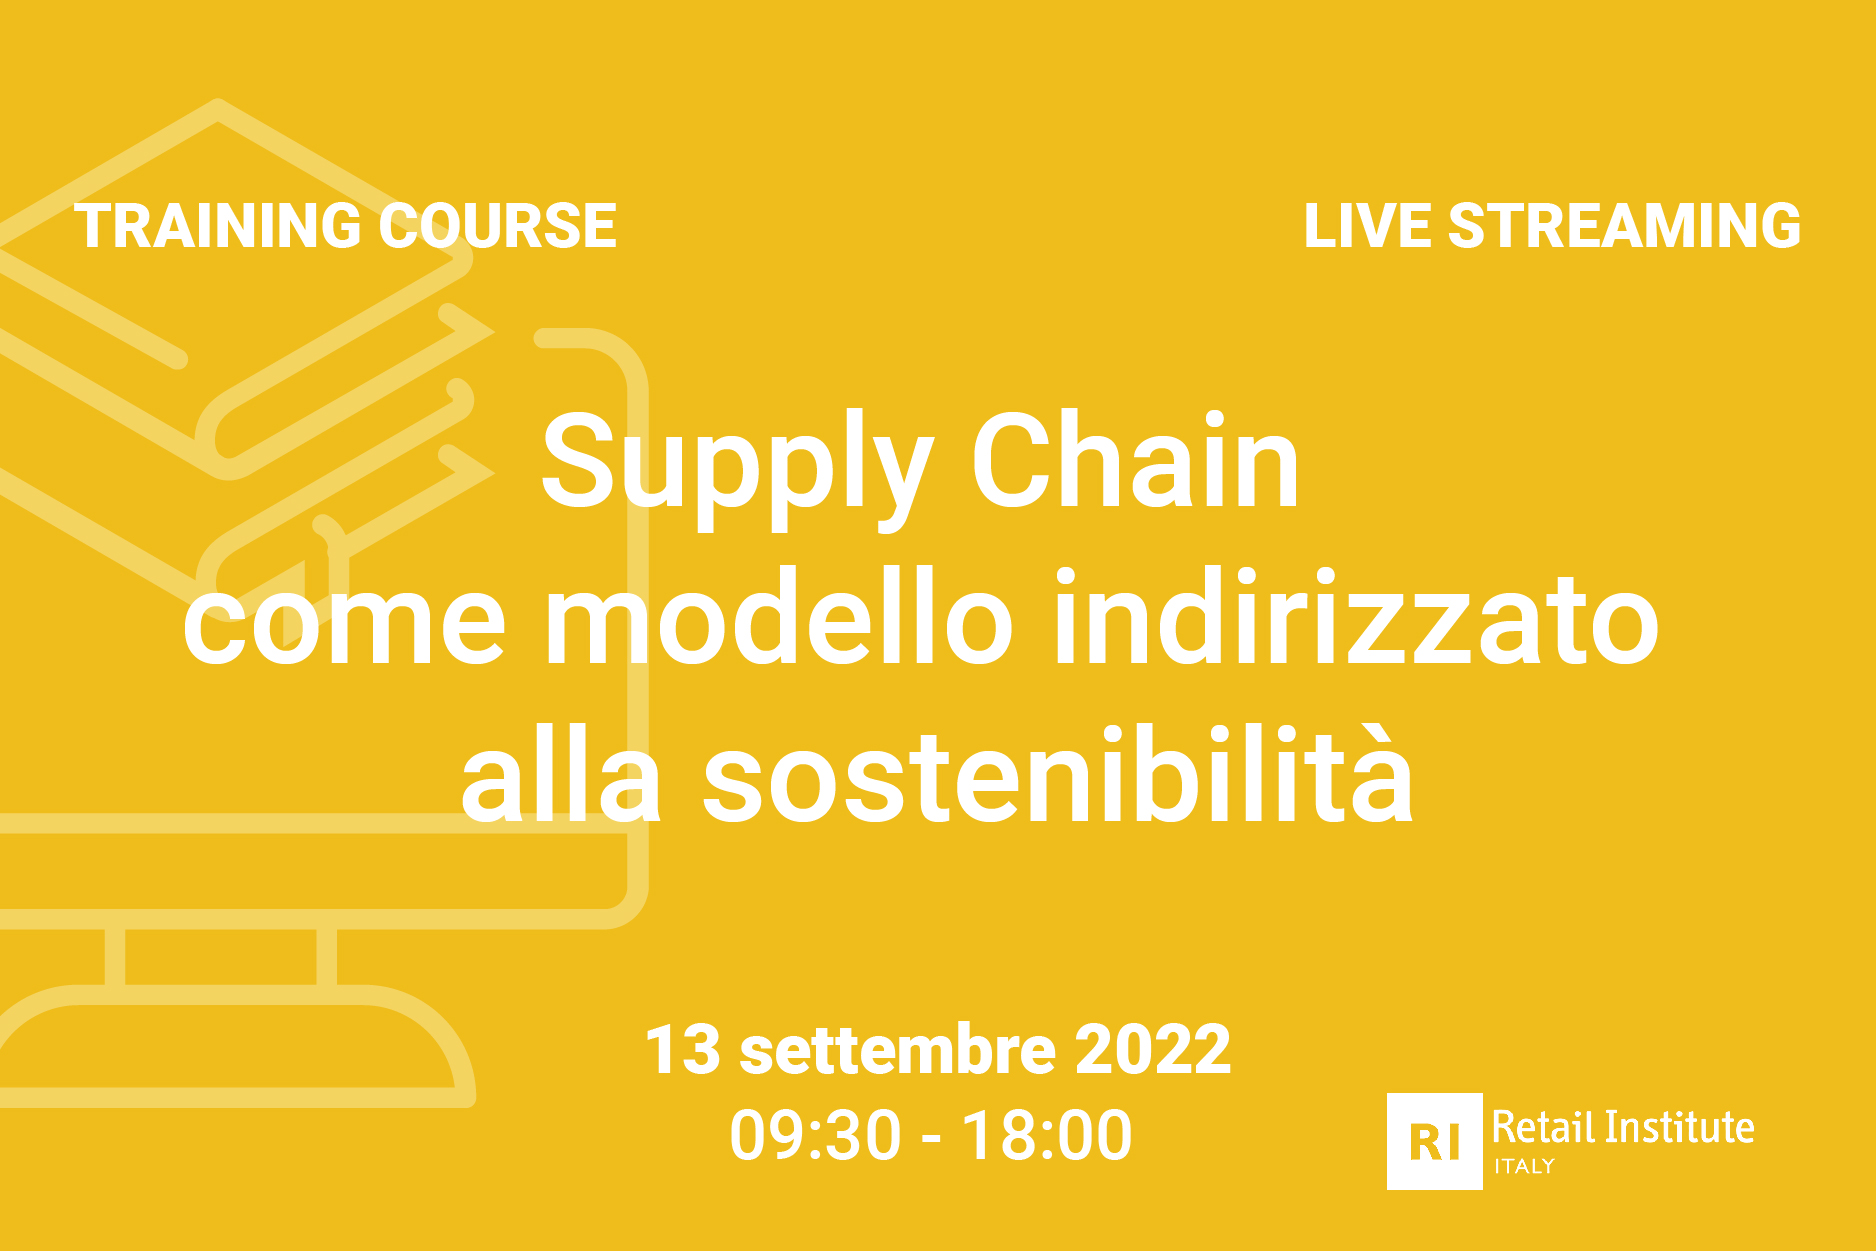 Training Course “Supply Chain come modello indirizzato alla sostenibilità” – 13 settembre 2022